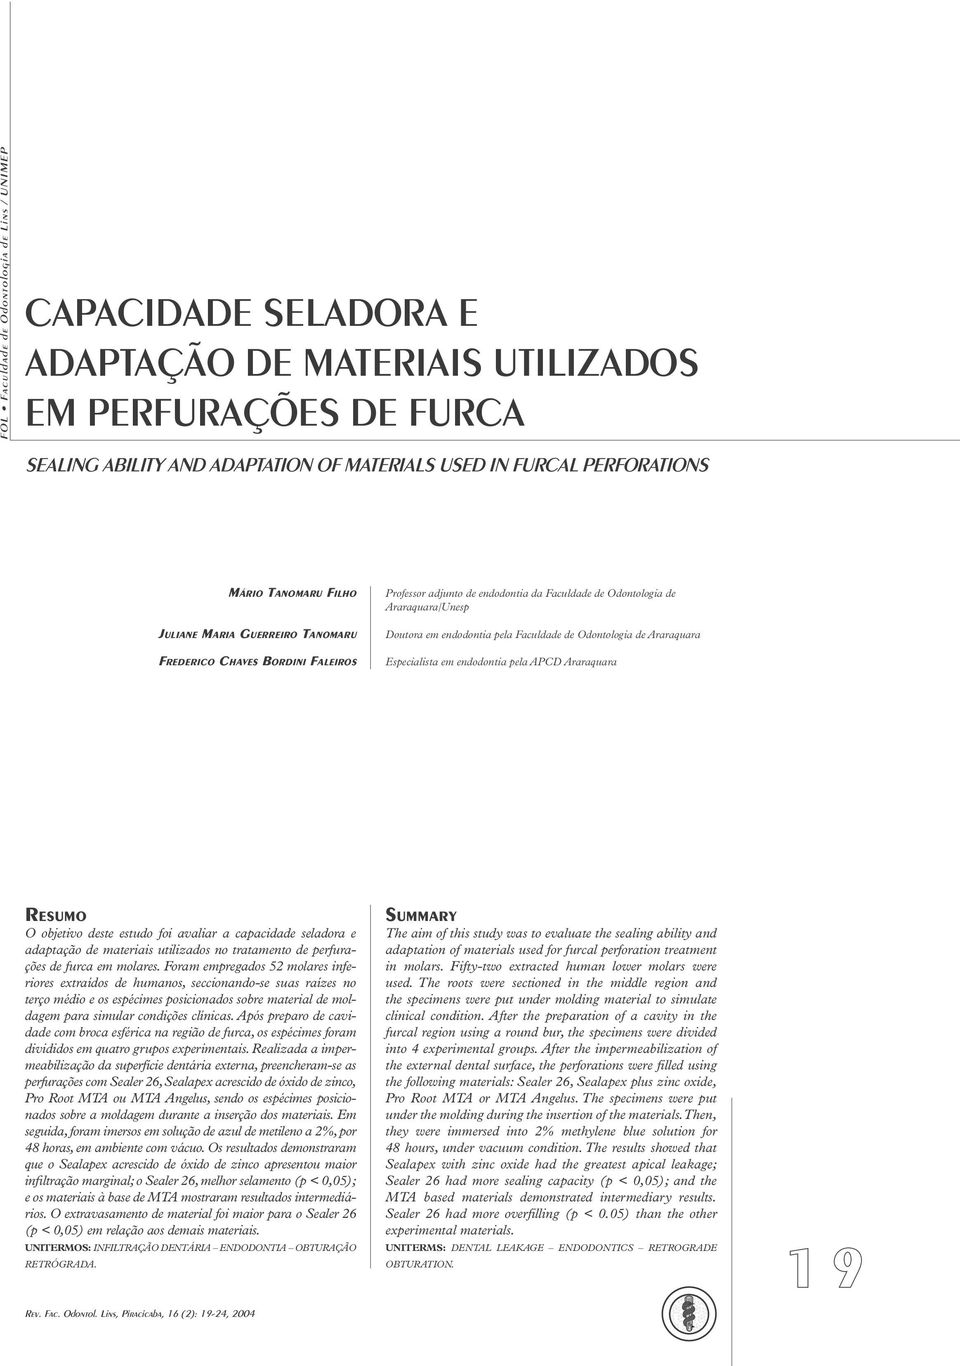 Faculdade de Odontologia de Araraquara Especialista em endodontia pela APCD Araraquara RESUMO O objetivo deste estudo foi avaliar a capacidade seladora e adaptação de materiais utilizados no